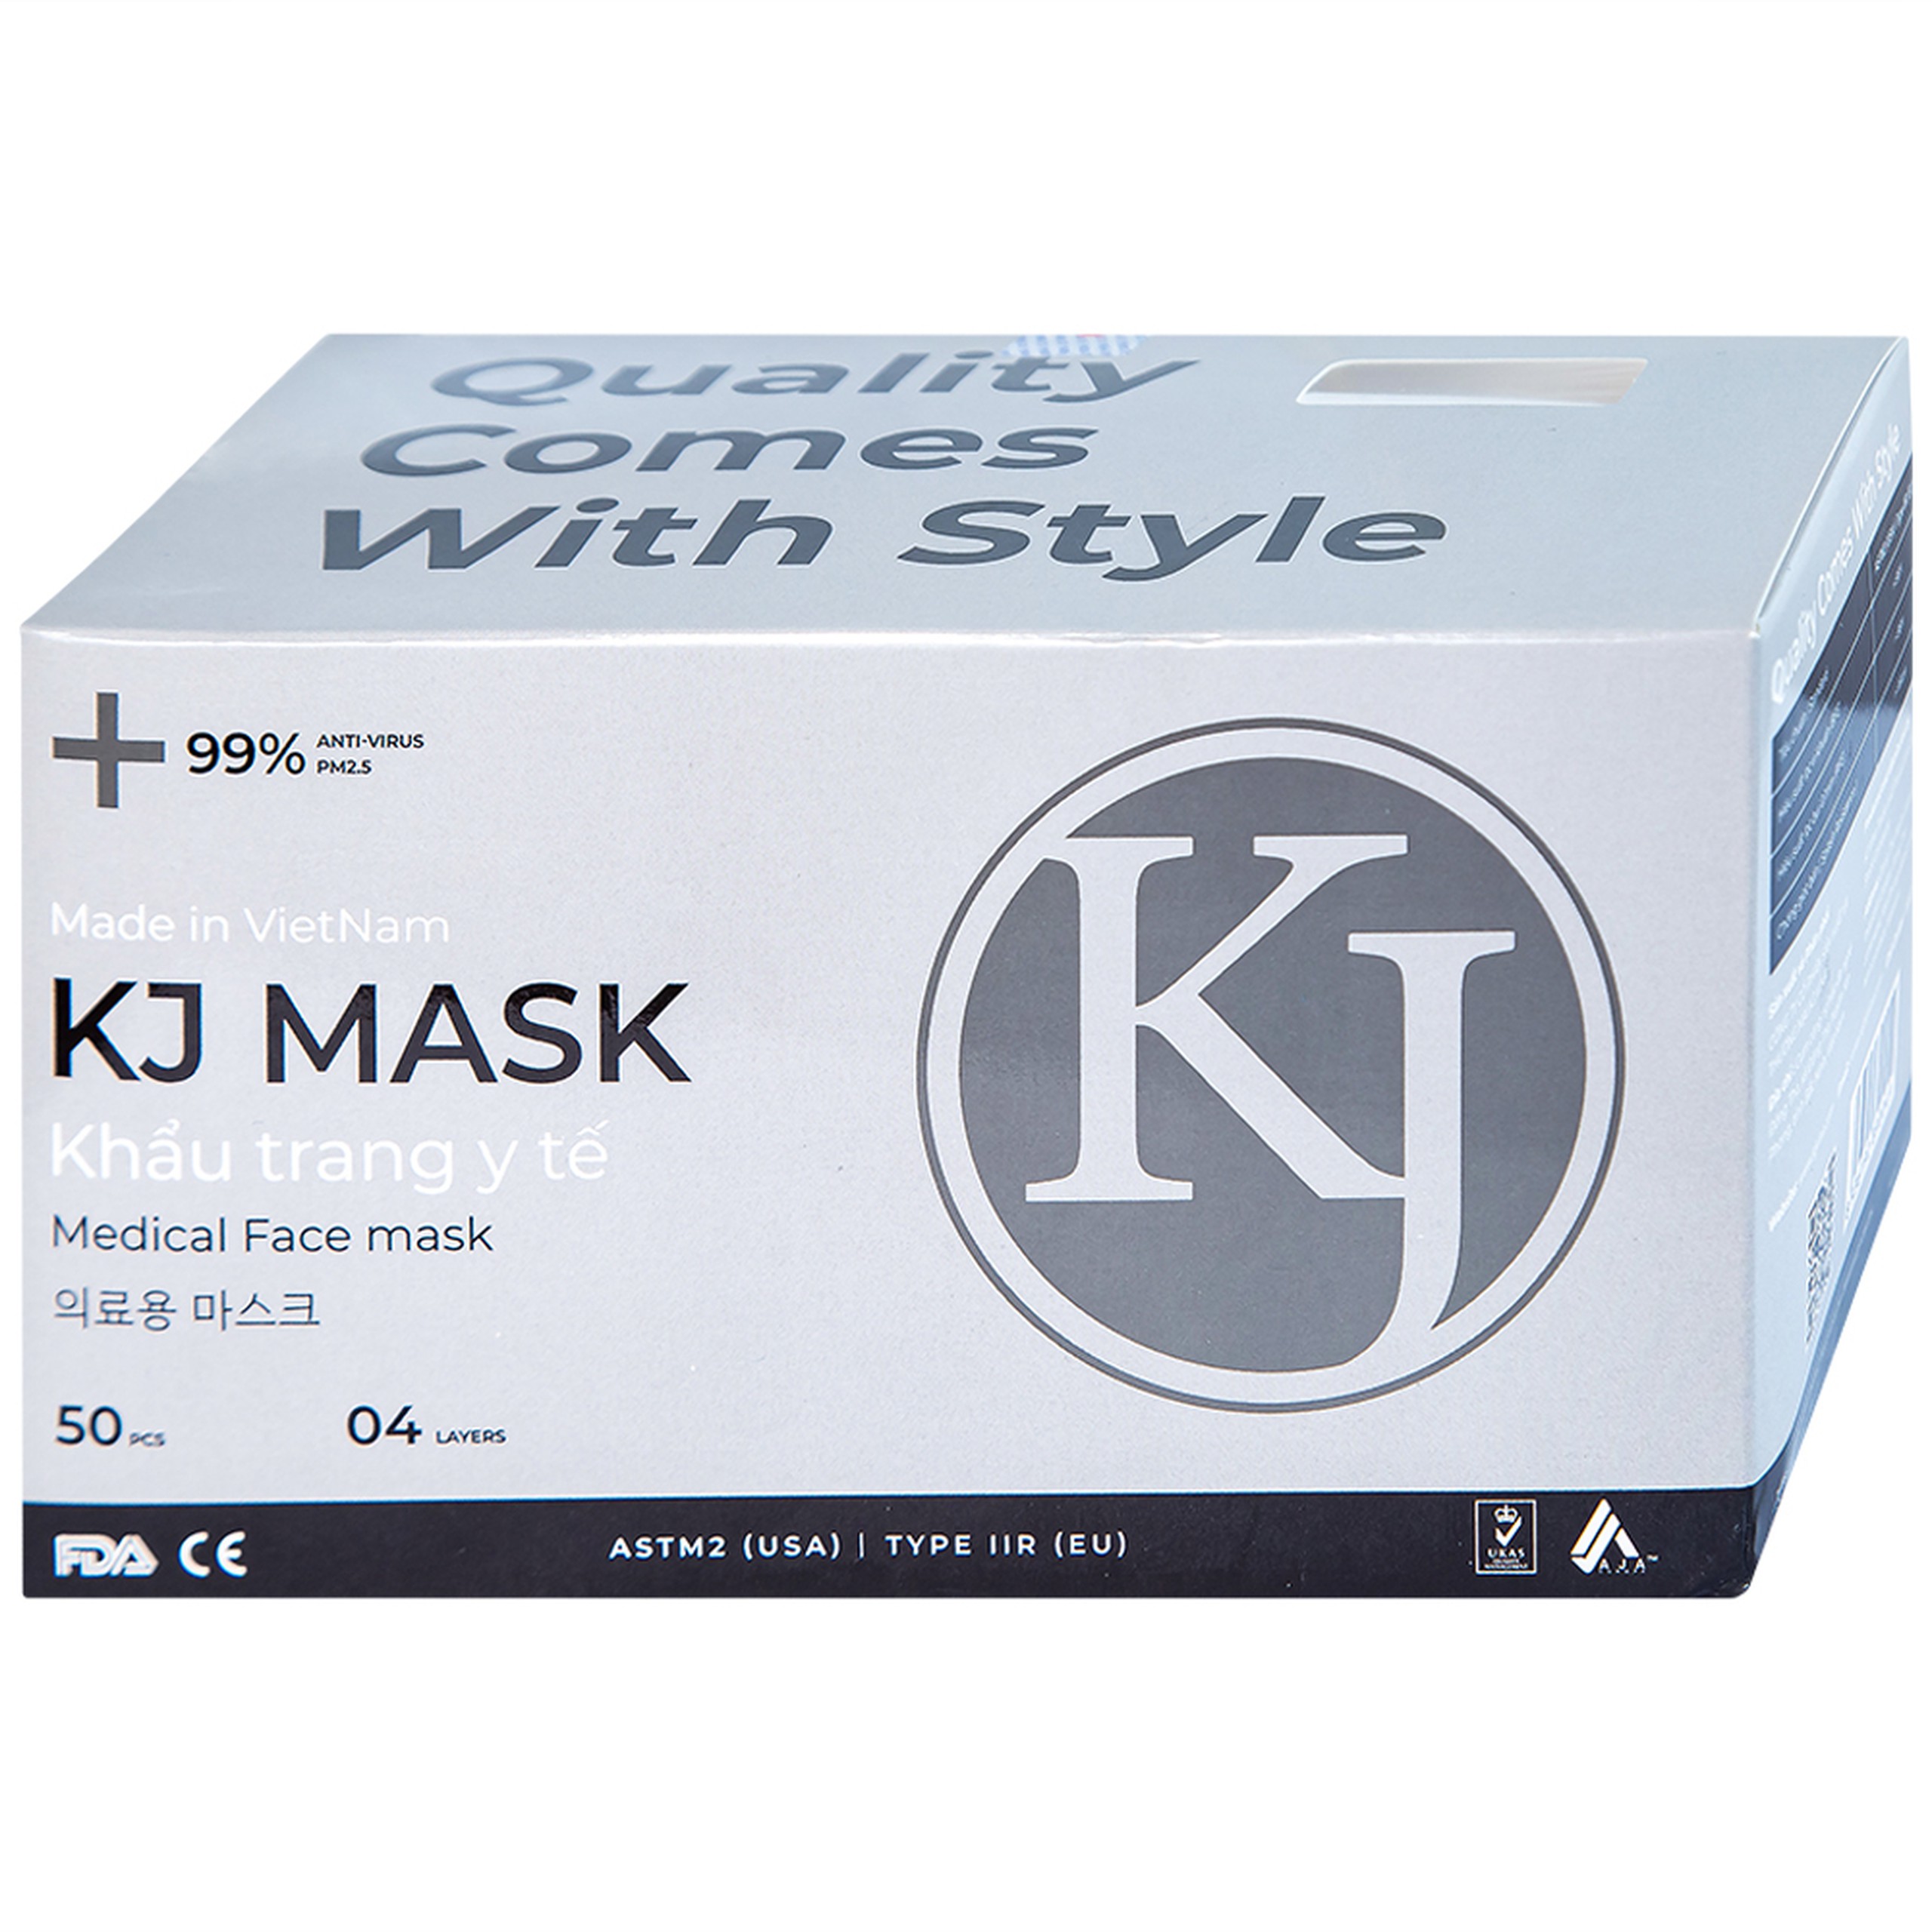 Khẩu trang y tế KJ Mask màu trắng 4 lớp hỗ trợ ngăn khói, bụi, kháng khuẩn (50 cái)